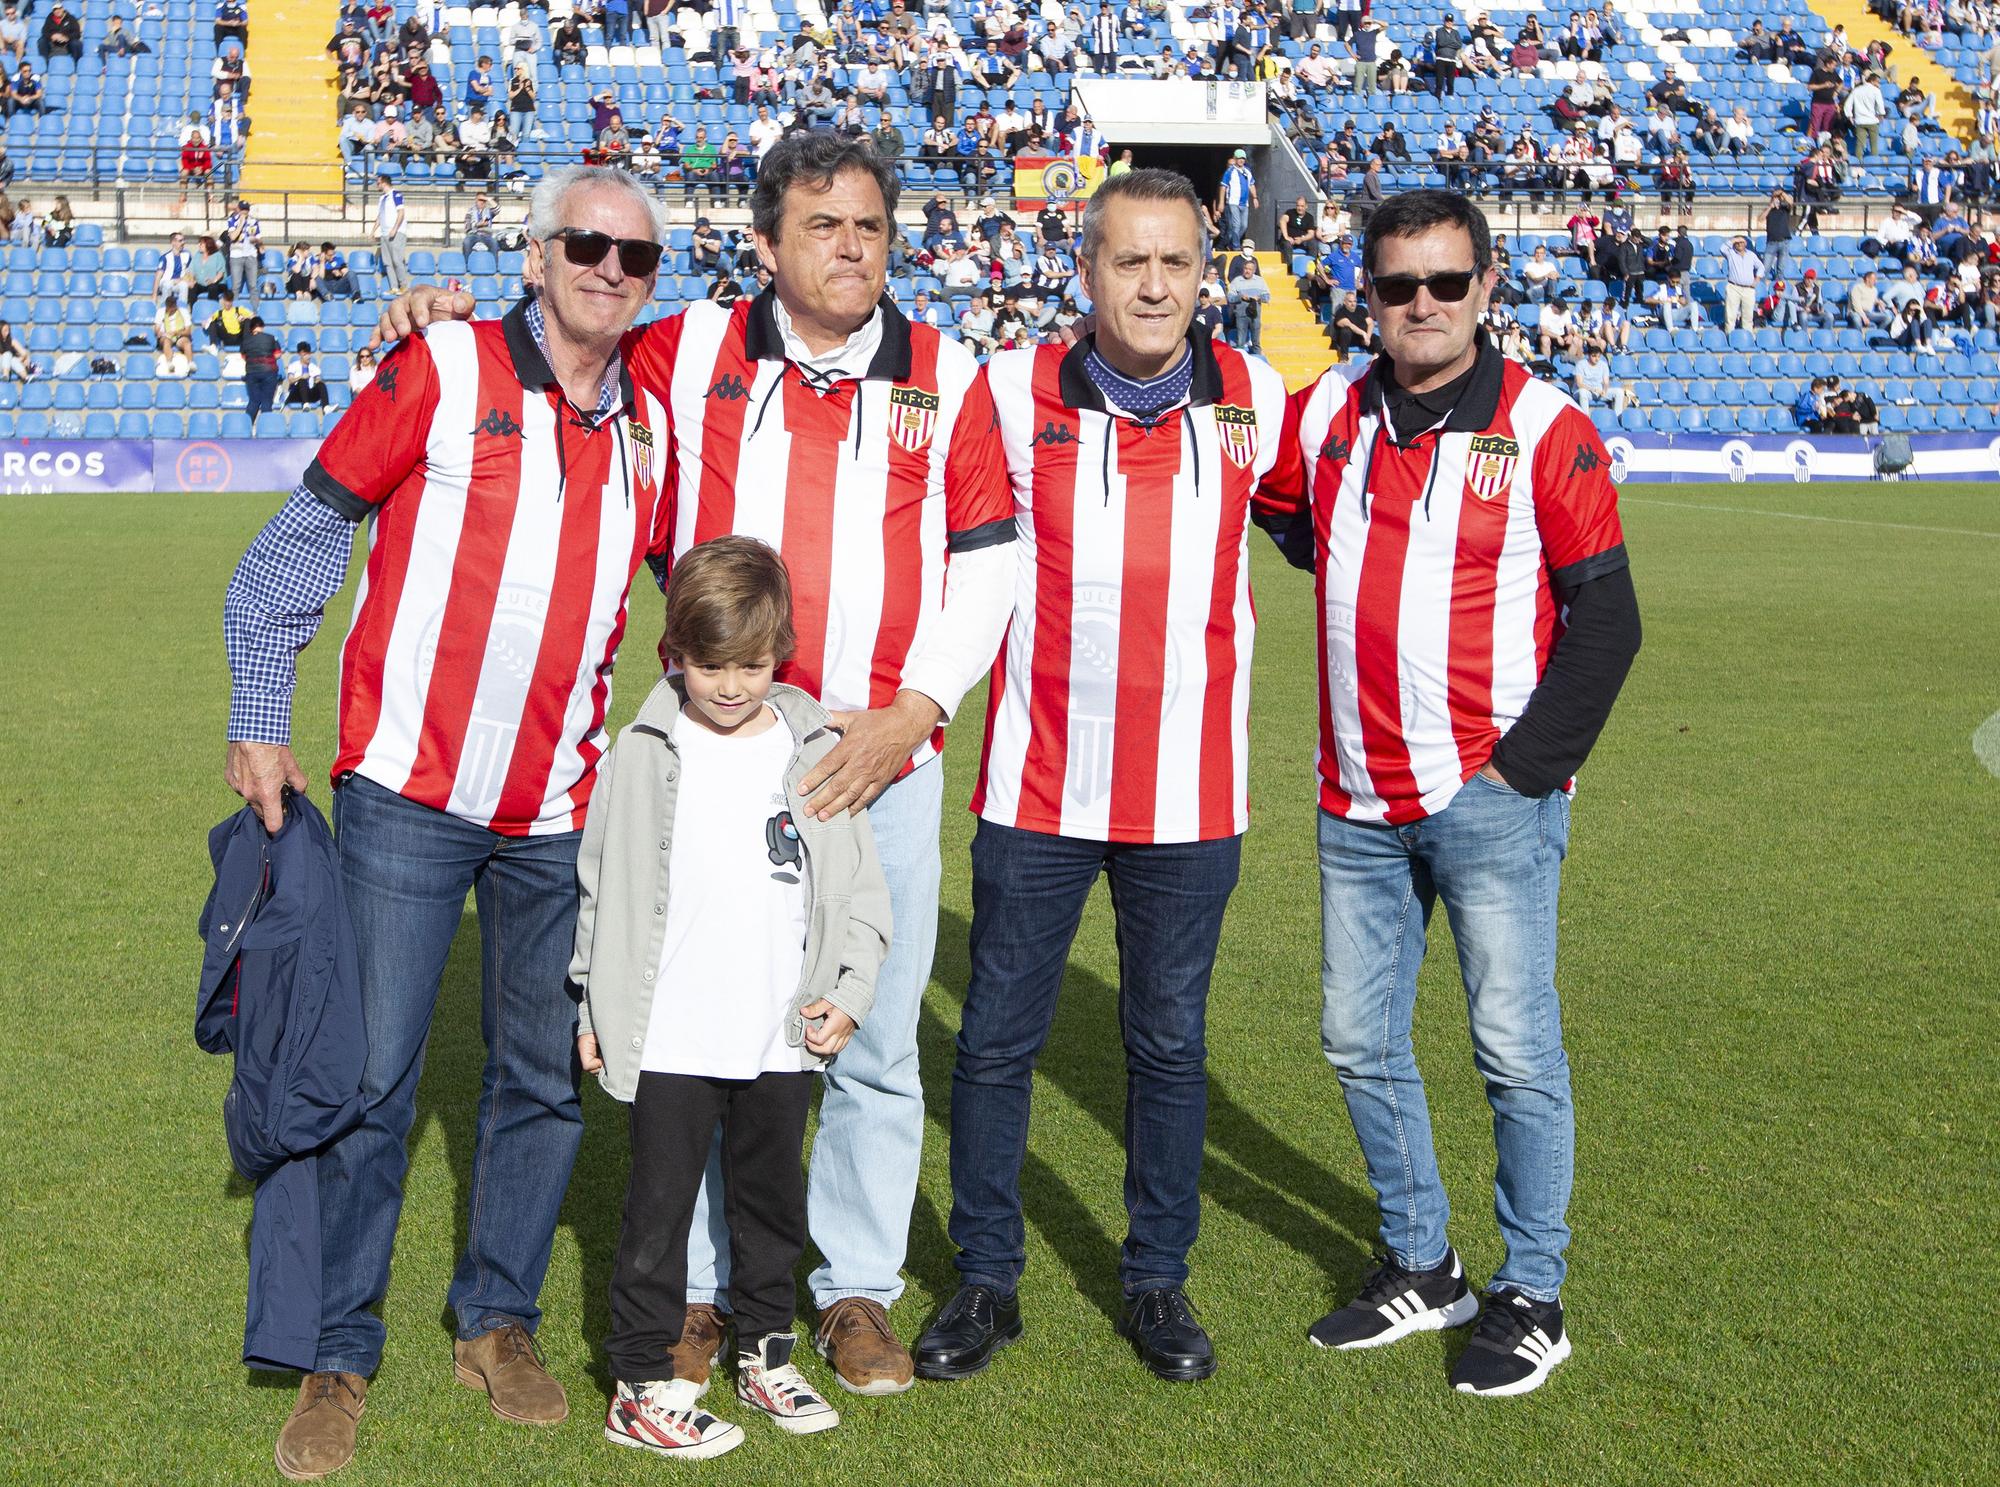 Juan Cartagena, Vicente Latorre, José Vicente Ramos y Recesvinto Casero, nuevos embajadores del club.